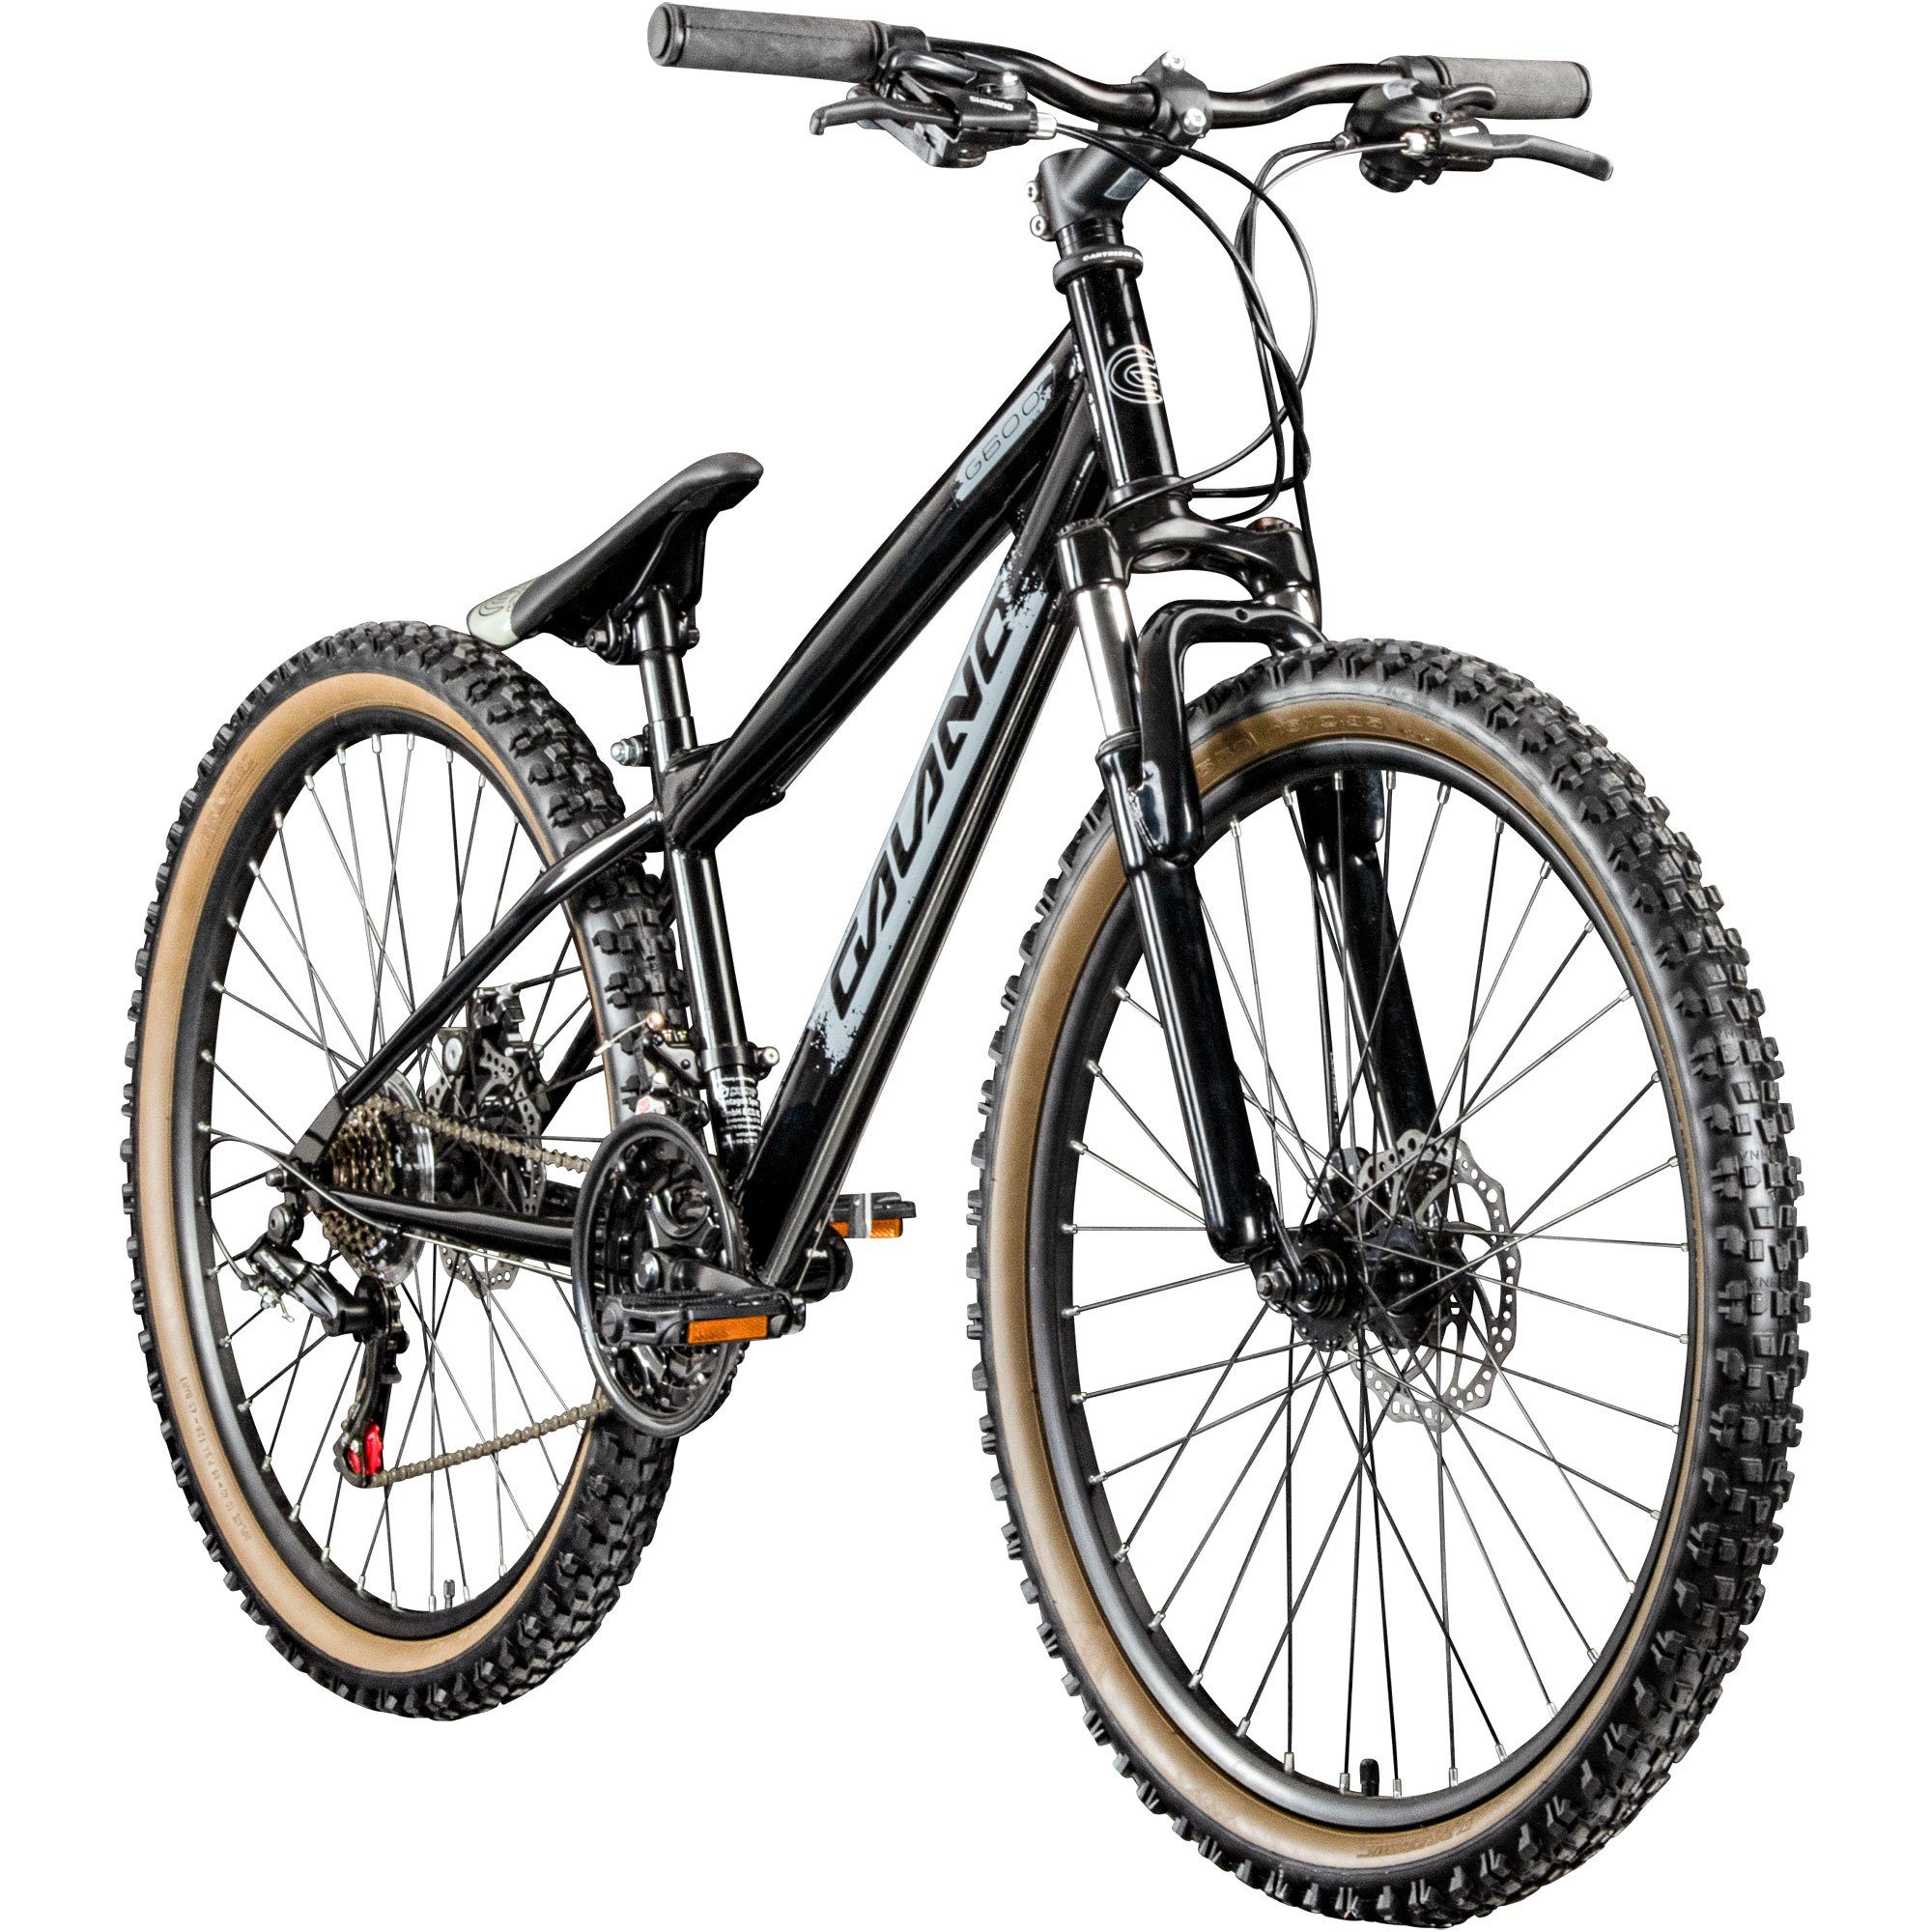 Galano Mountainbike G600, 18 Gang, Kettenschaltung, Dirtbike Fahrrad 26 Zoll für Jugendliche und Erwachsene 145 - 165 cm schwarz/silbergrau